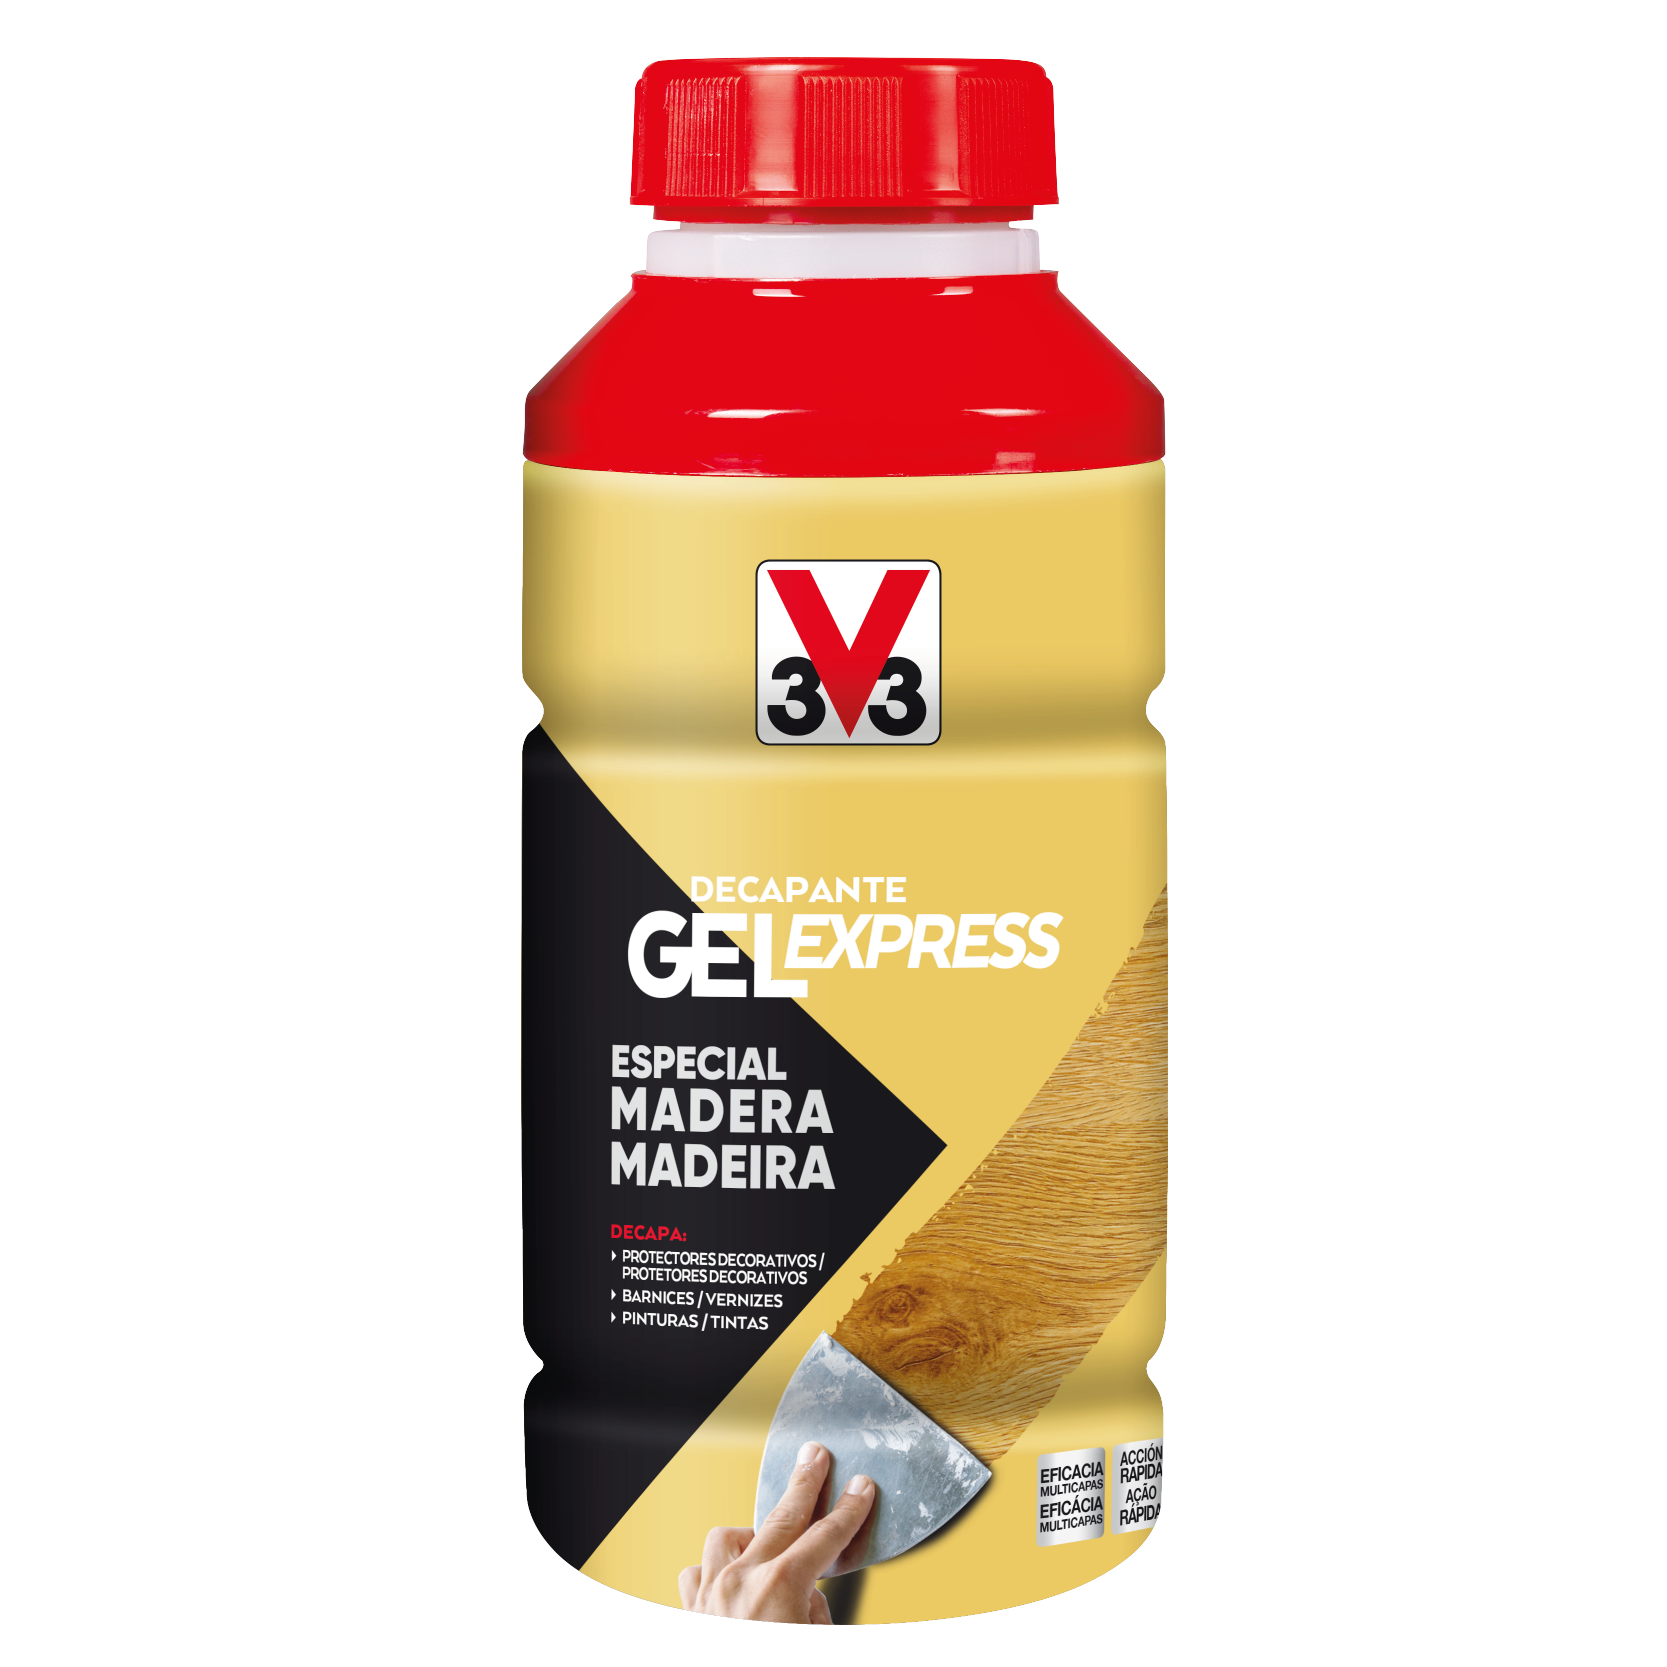 Decapante gel express madera - V33